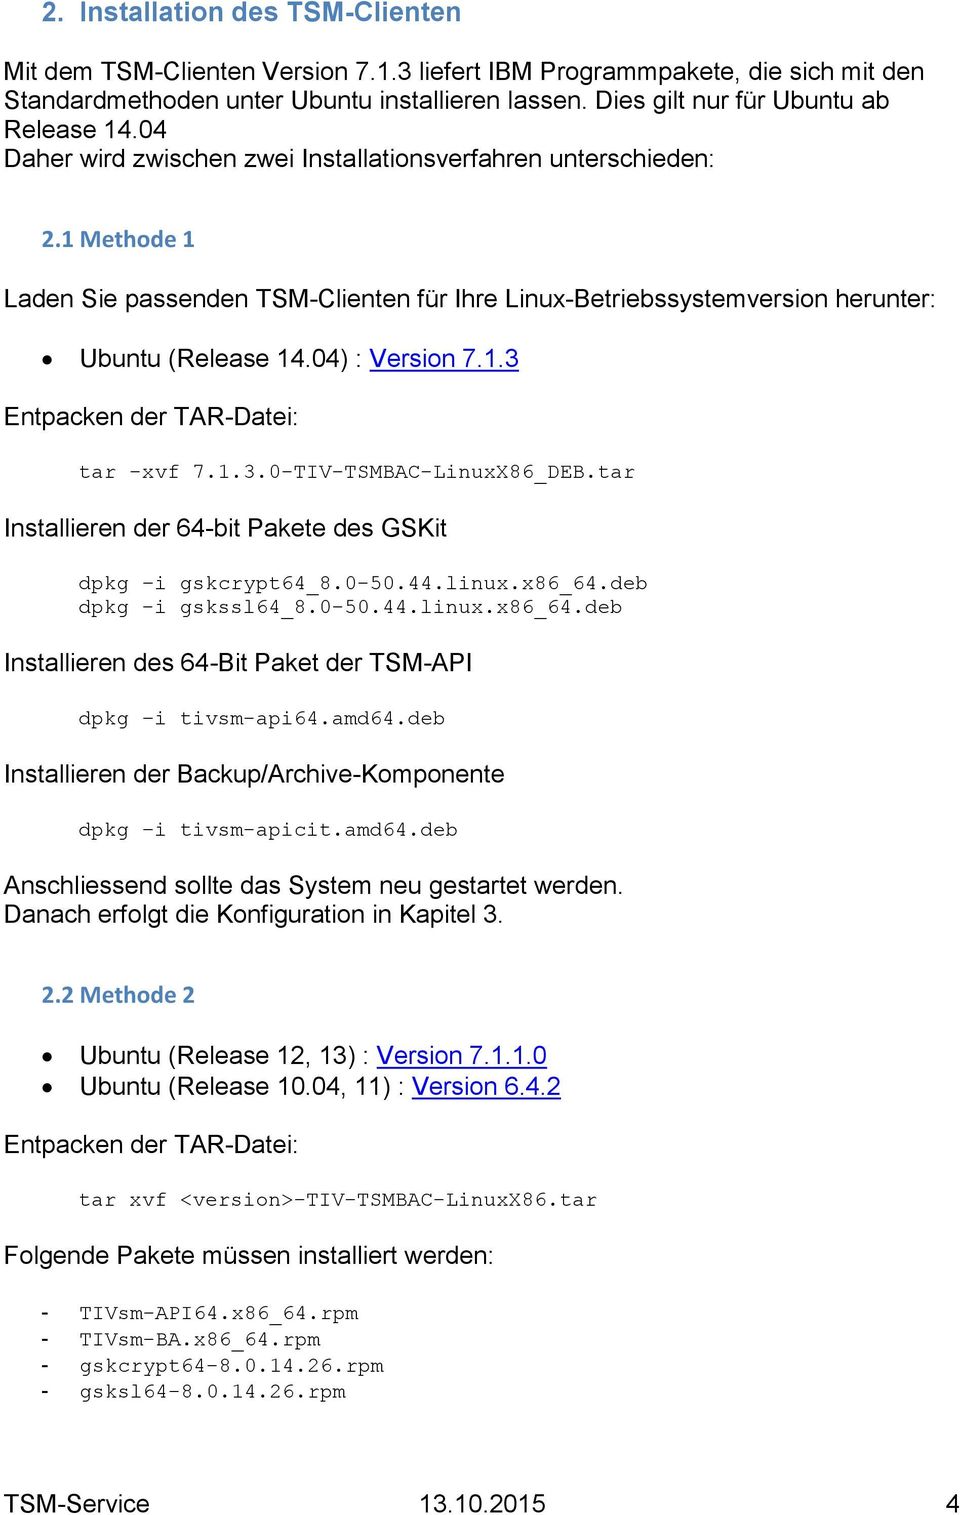 1 Methode 1 Laden Sie passenden TSM-Clienten für Ihre Linux-Betriebssystemversion herunter: Ubuntu (Release 14.04) : Version 7.1.3 Entpacken der TAR-Datei: tar -xvf 7.1.3.0-TIV-TSMBAC-LinuxX86_DEB.